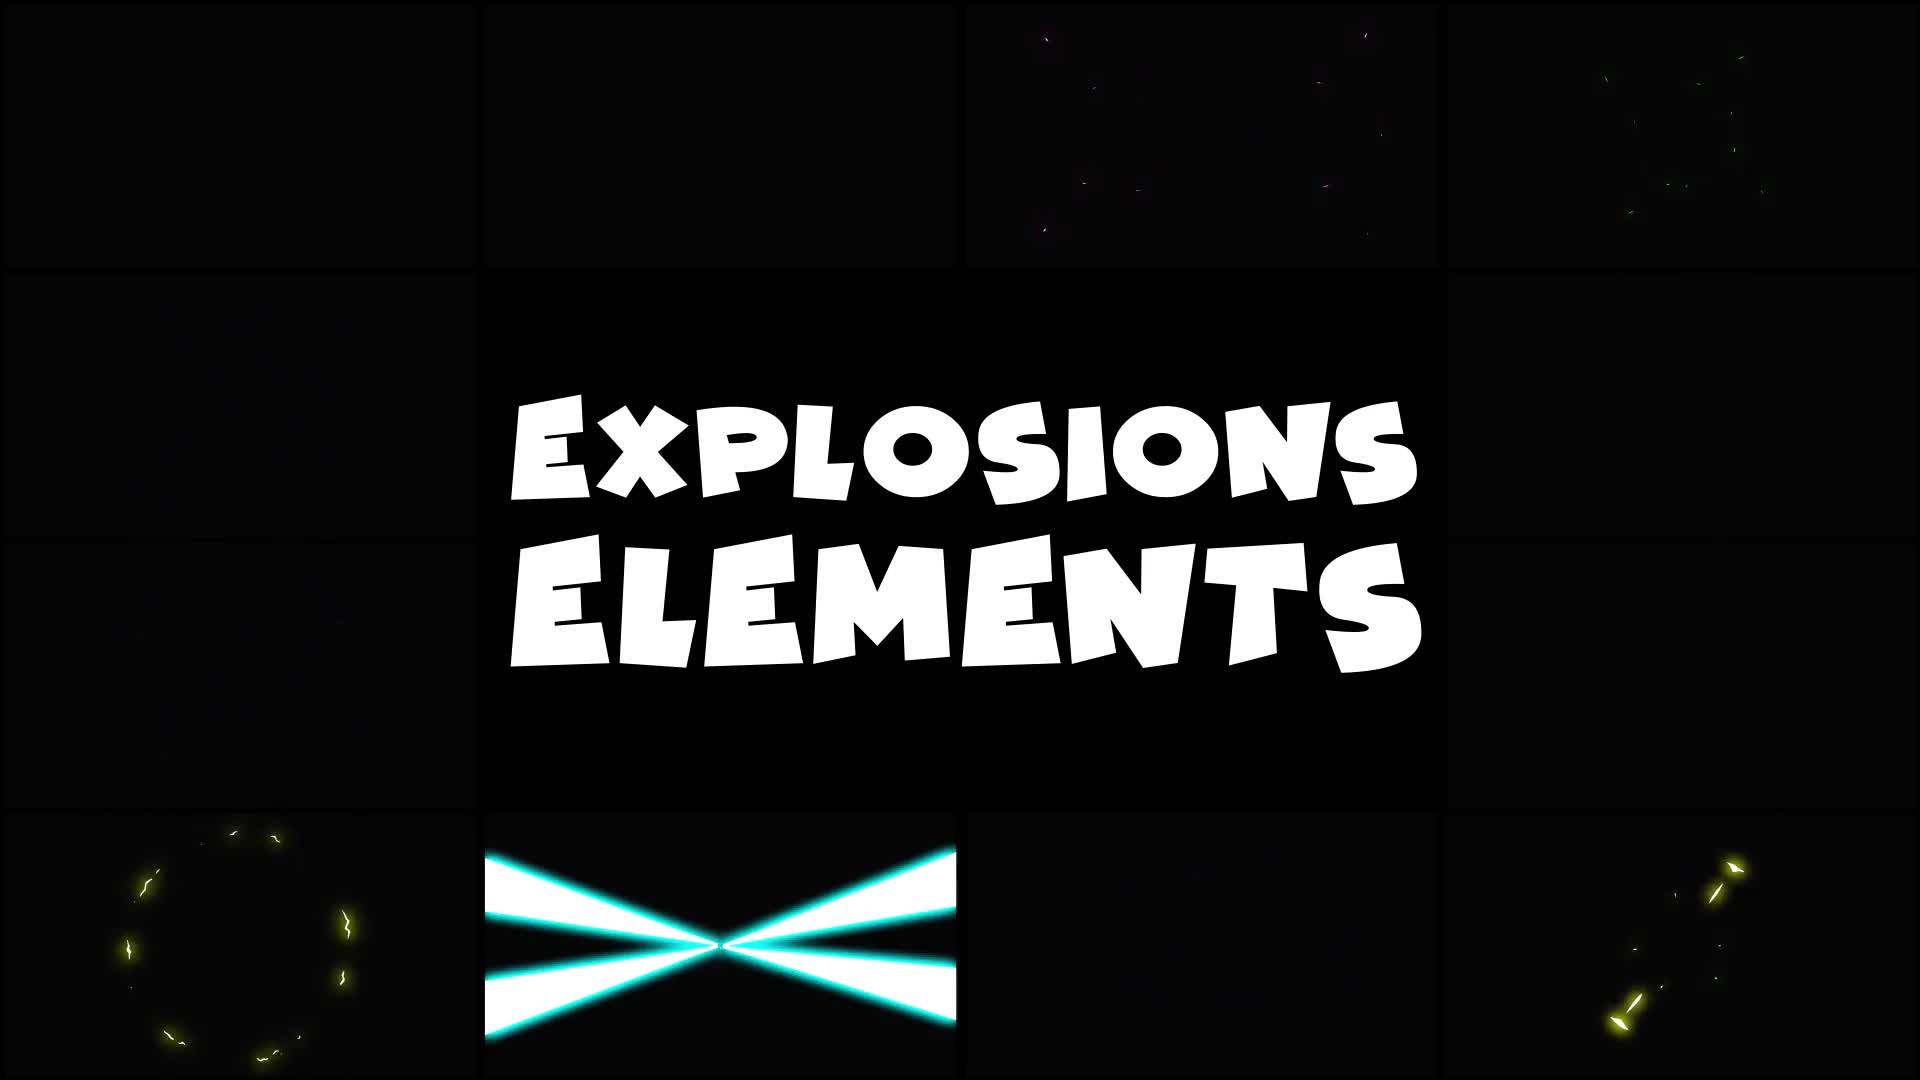 Energy Explosions | Premiere Pro MOGRT Videohive 30559684 Premiere Pro Image 2